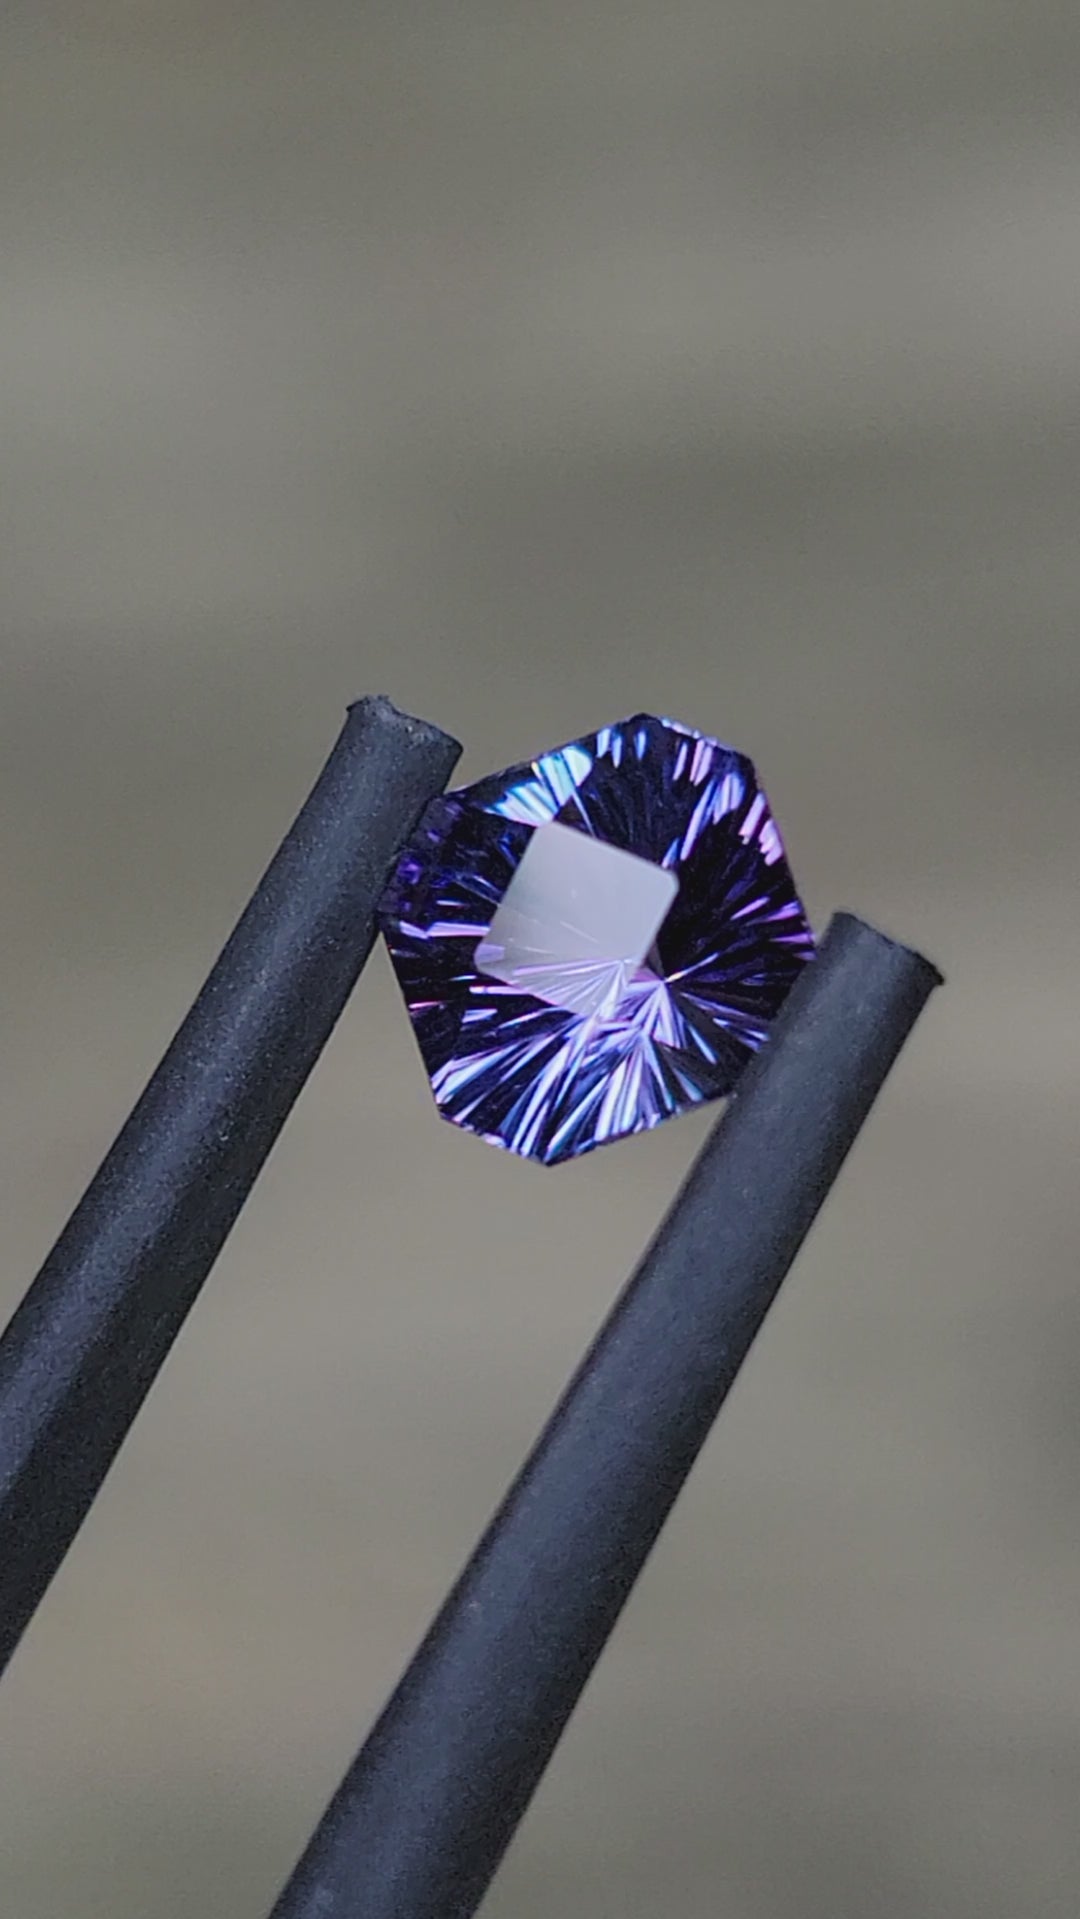 Octogone Carré Tanzanite Bleu/Violet - 1.34 carats -6.4x7.2mm - Taille Fantaisie